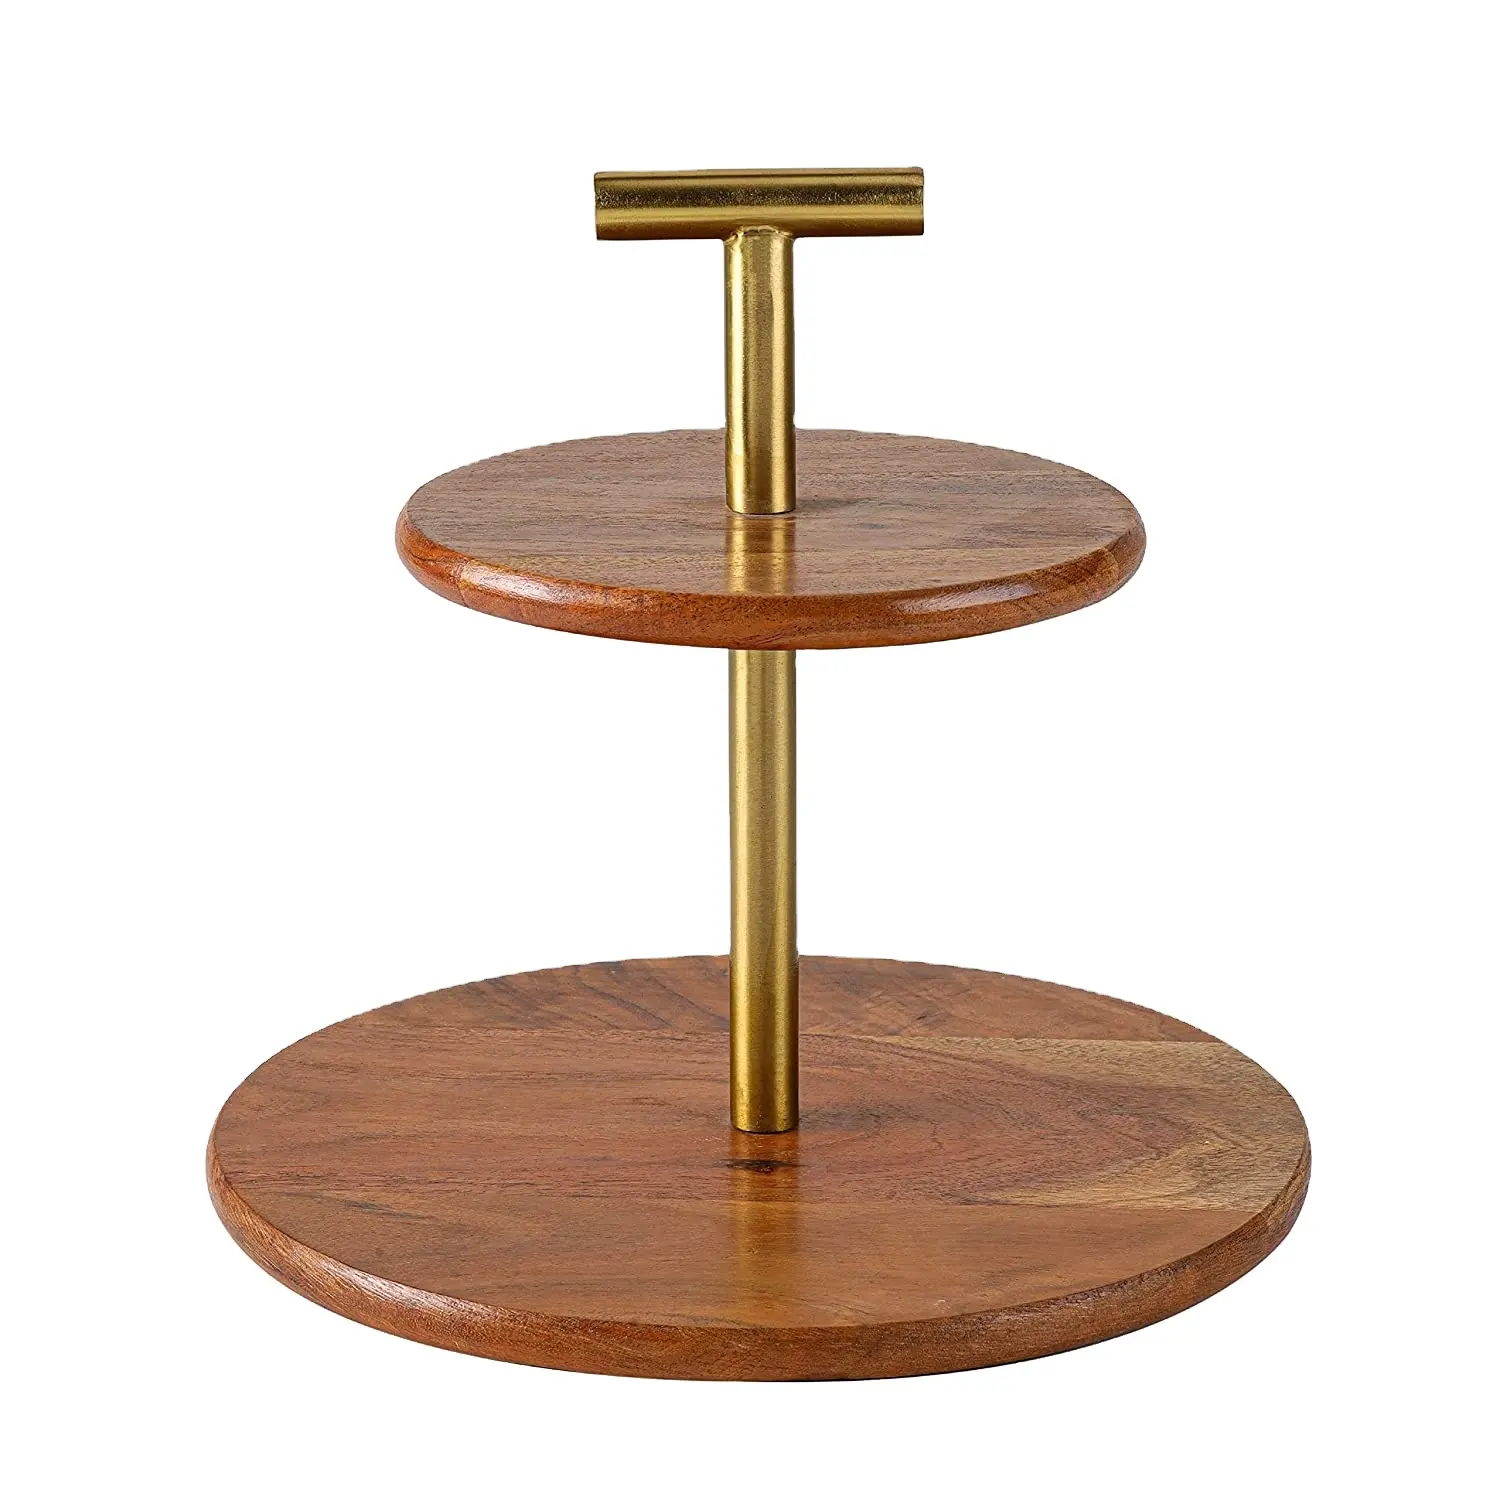 Supporto per Cupcake in legno di migliore qualità Design fatto a mano a 2 livelli in legno arrotondato con manico in metallo e bordo con Base